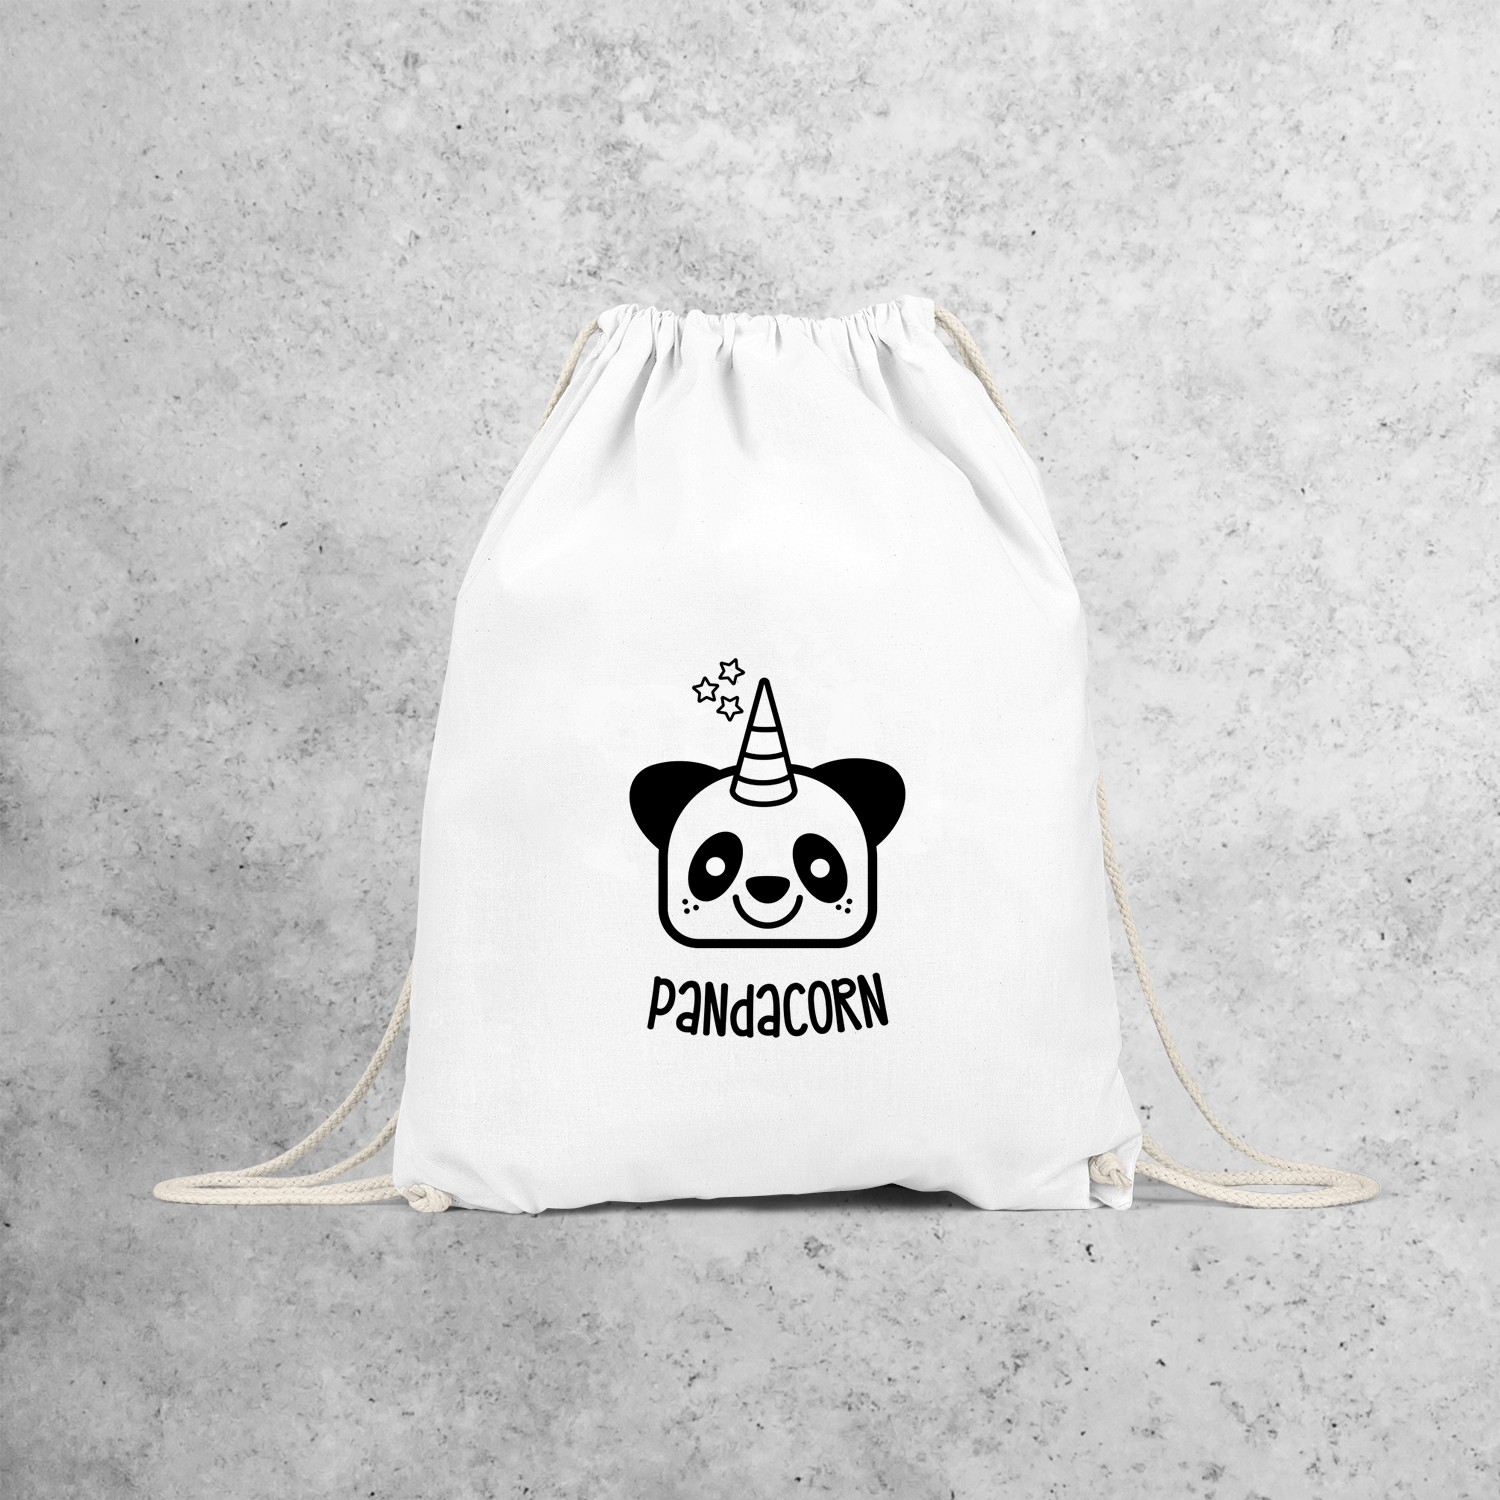 Pandacorn backpack